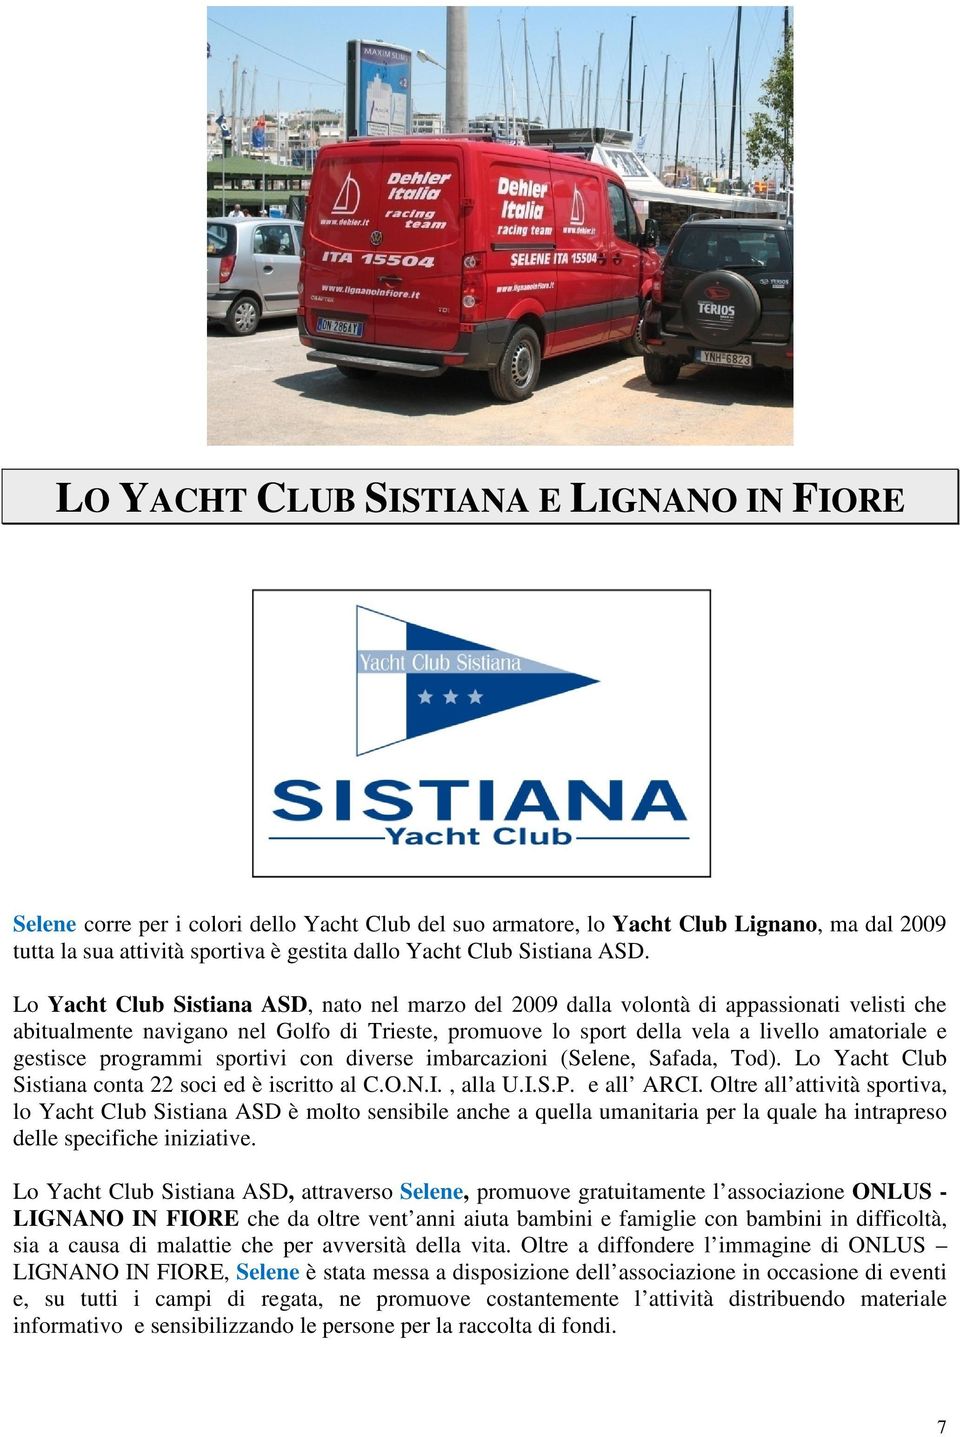 Lo Yacht Club Sistiana ASD, nato nel marzo del 2009 dalla volontà di appassionati velisti che abitualmente navigano nel Golfo di Trieste, promuove lo sport della vela a livello amatoriale e gestisce